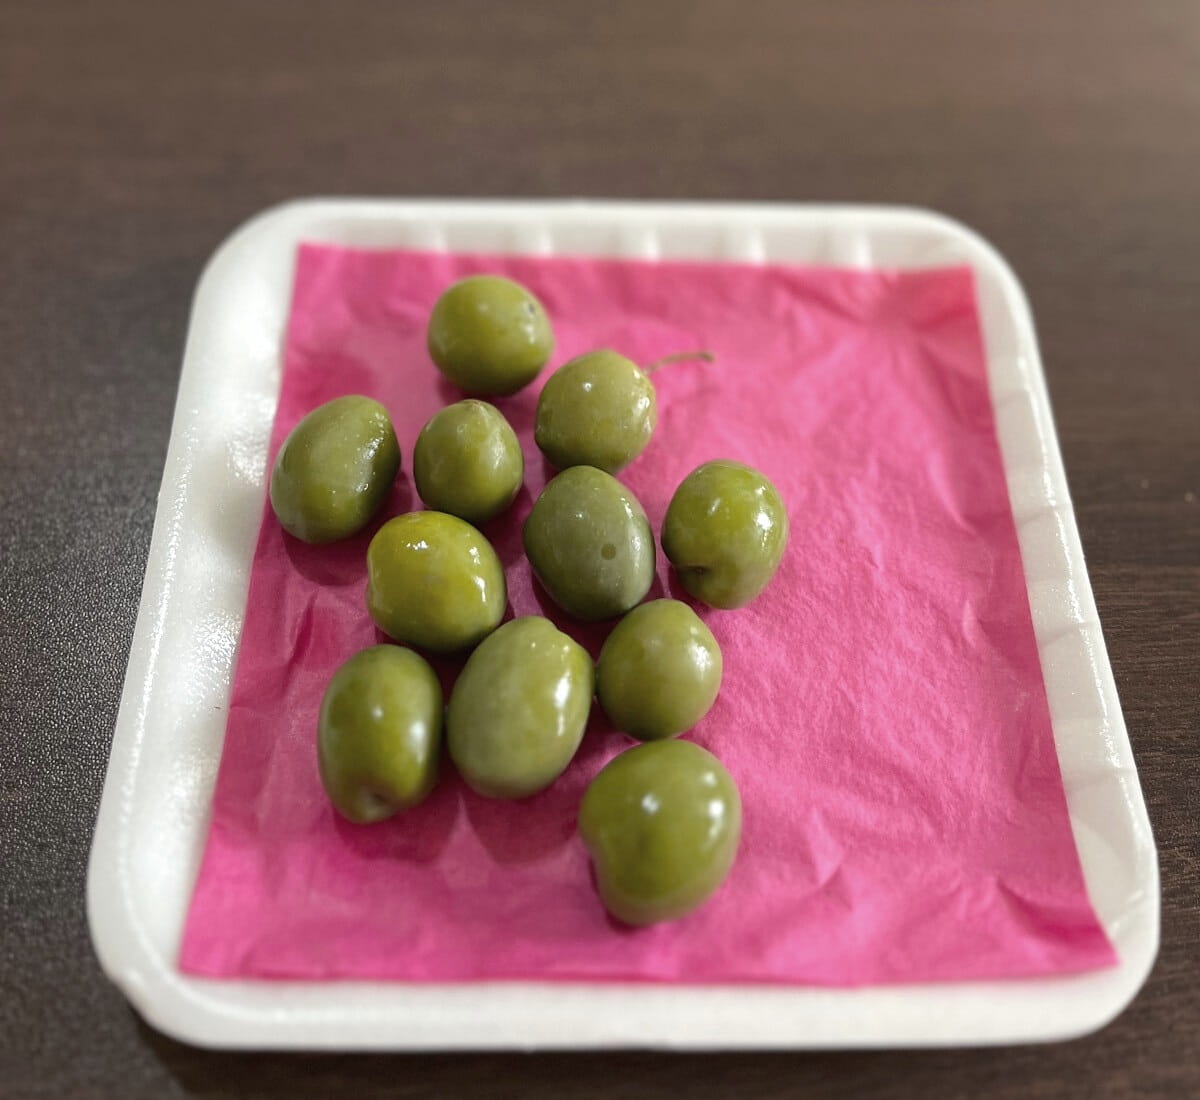 Castelvetrano olives on tray